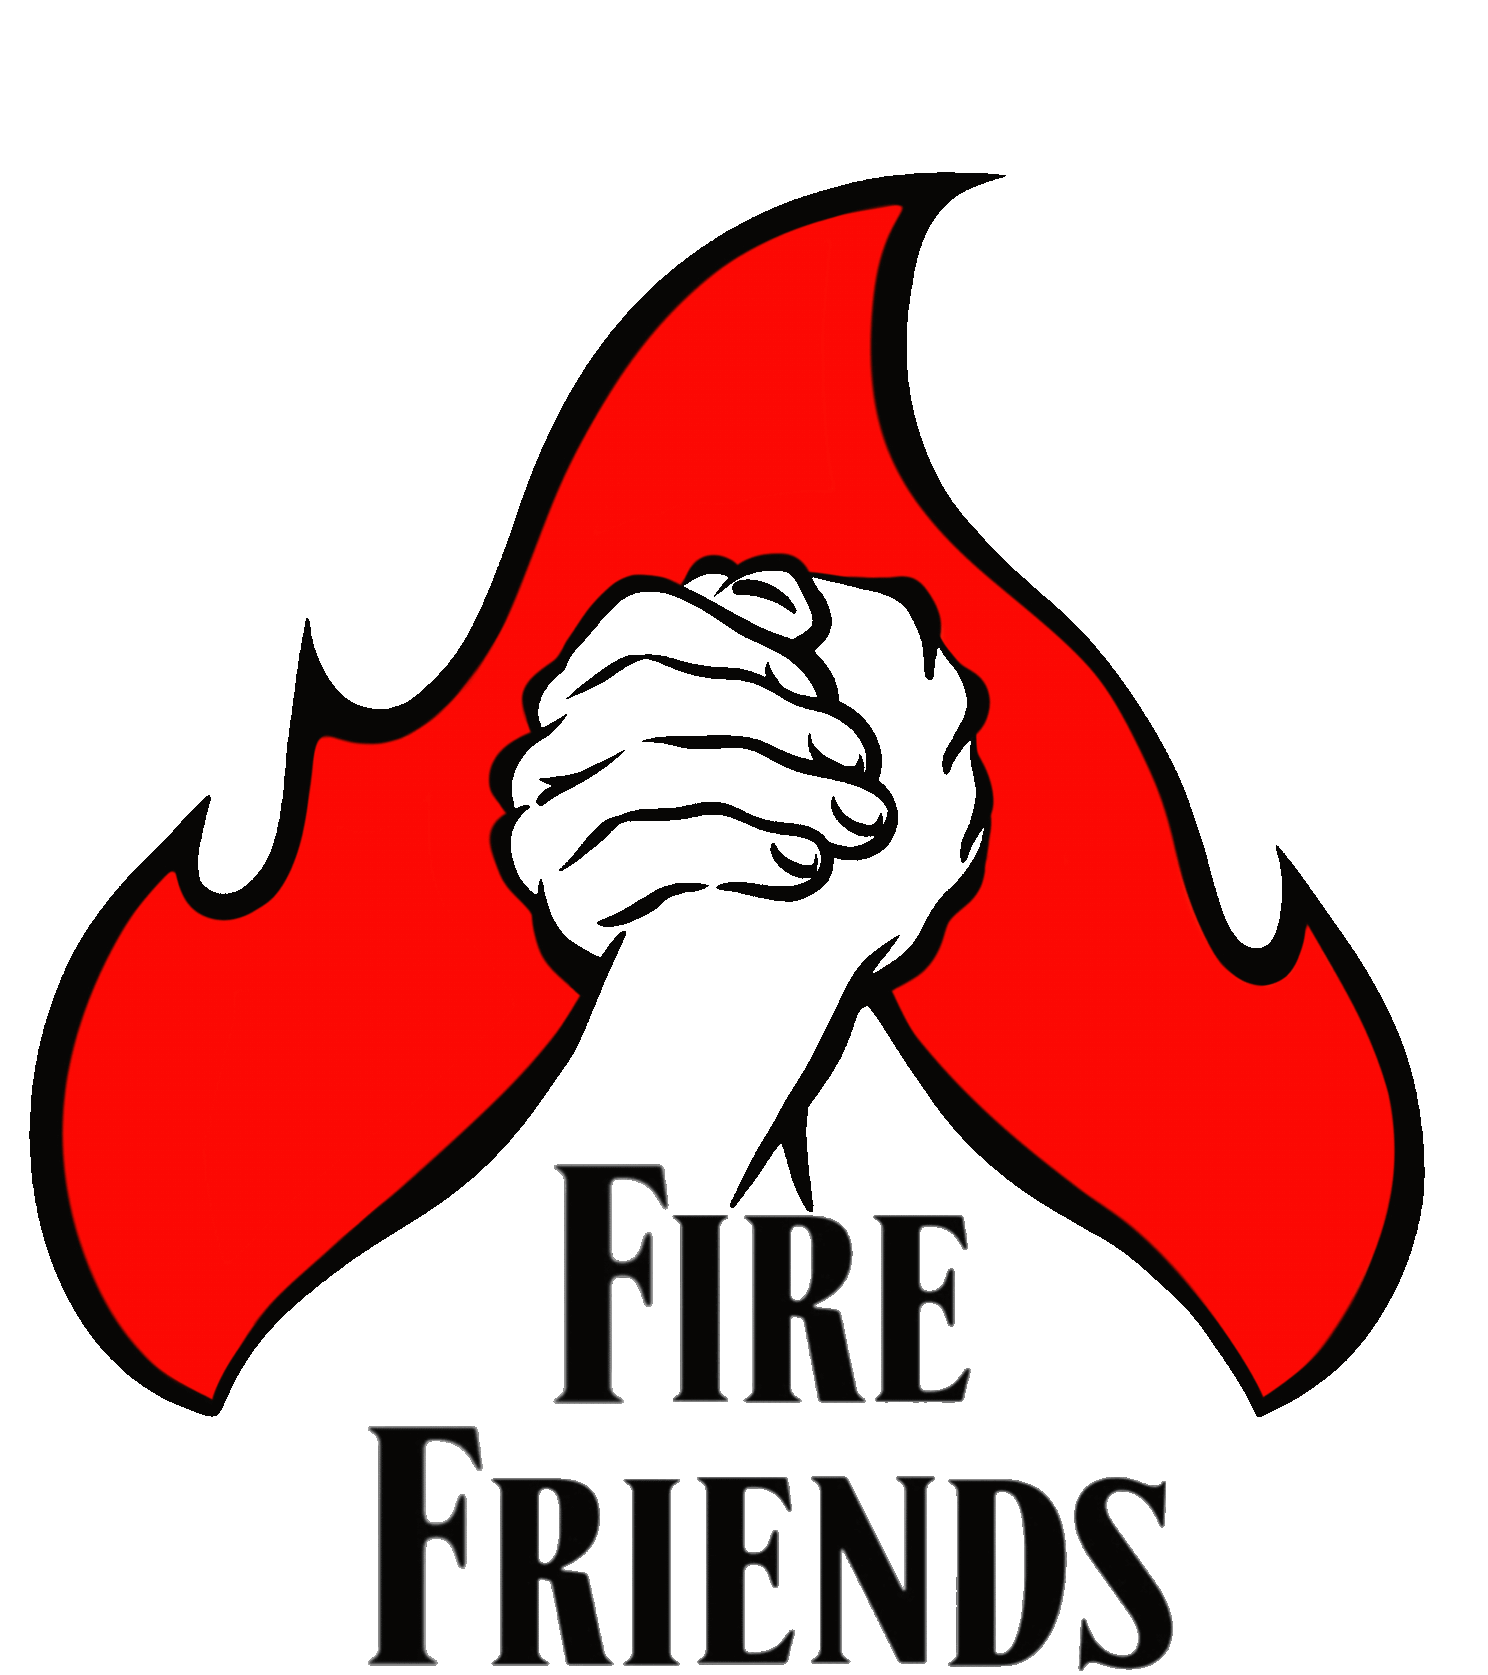 FireFriends